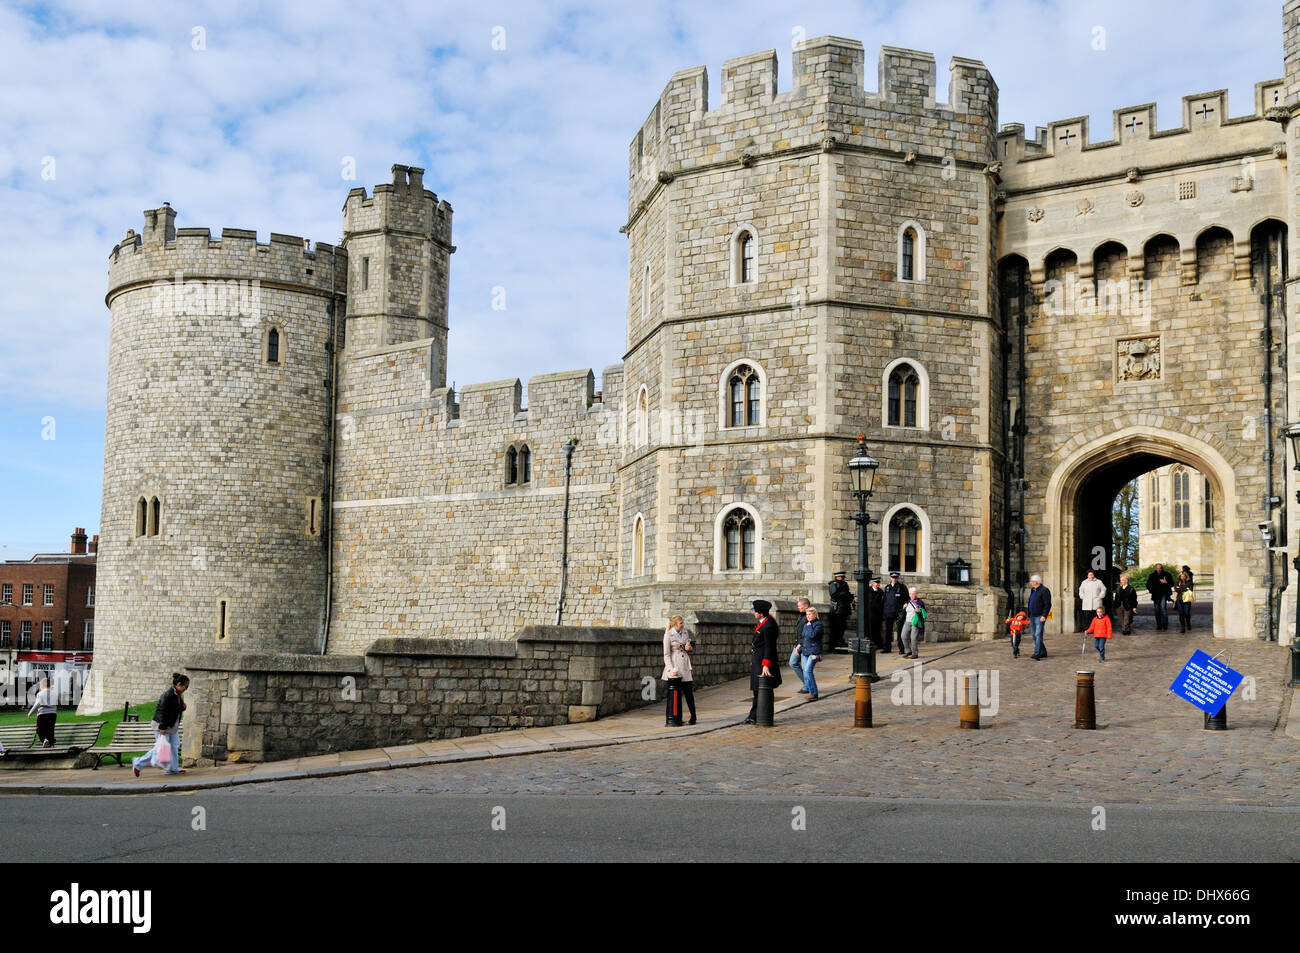 Windsor Castle, Royal Borough of Windsor, UK Stock Photo